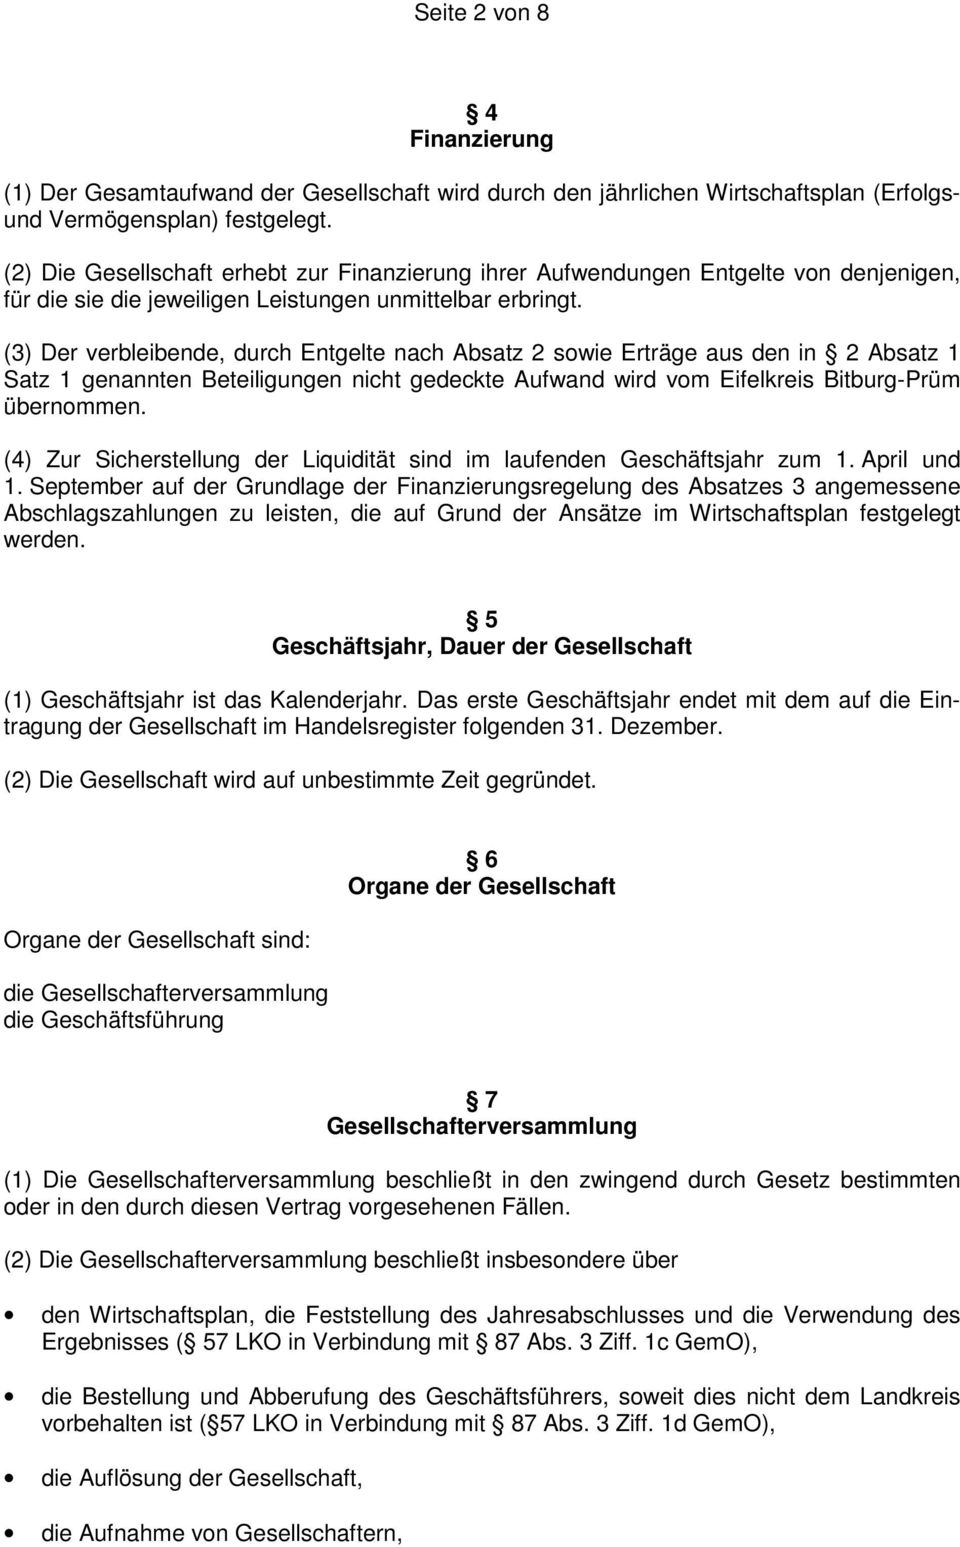 (3) Der verbleibende, durch Entgelte nach Absatz 2 sowie Erträge aus den in 2 Absatz 1 Satz 1 genannten Beteiligungen nicht gedeckte Aufwand wird vom Eifelkreis Bitburg-Prüm übernommen.